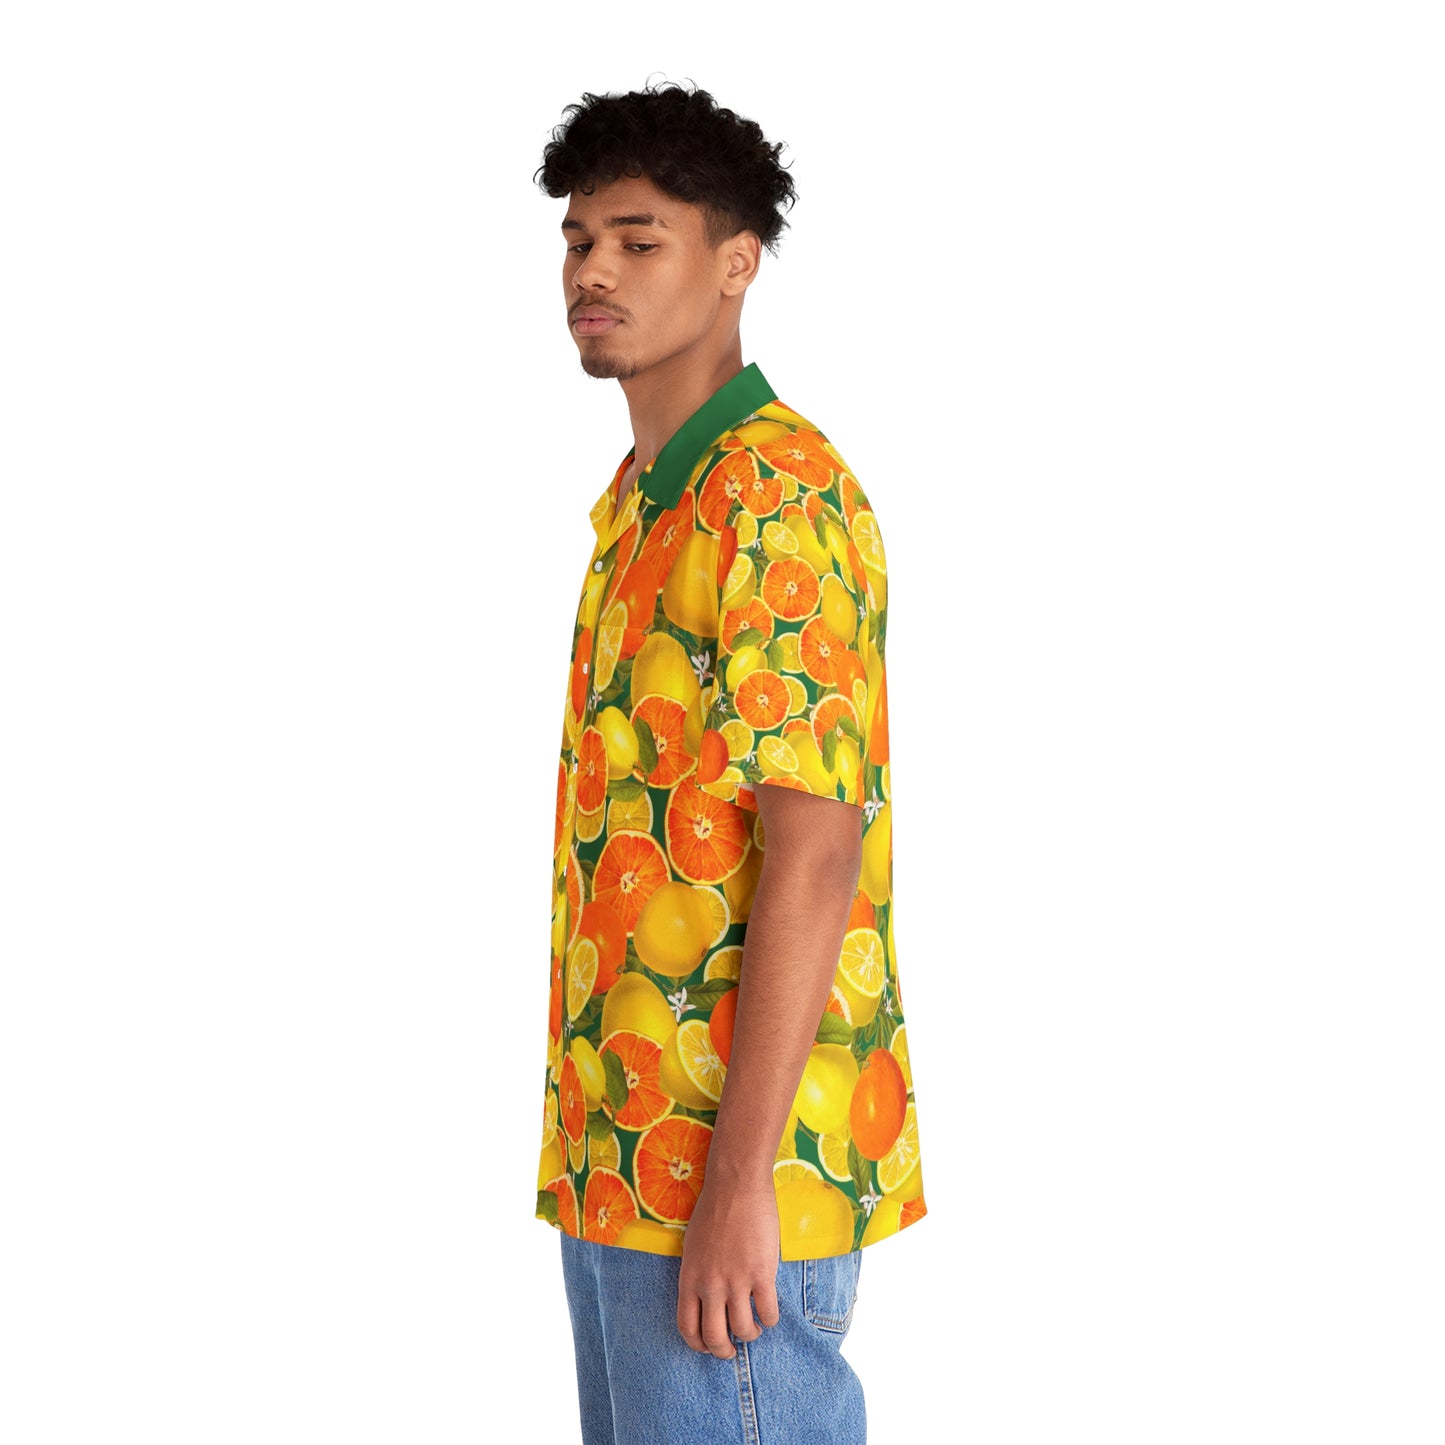 Summer Citrus - Men's Hawaiian Shirt